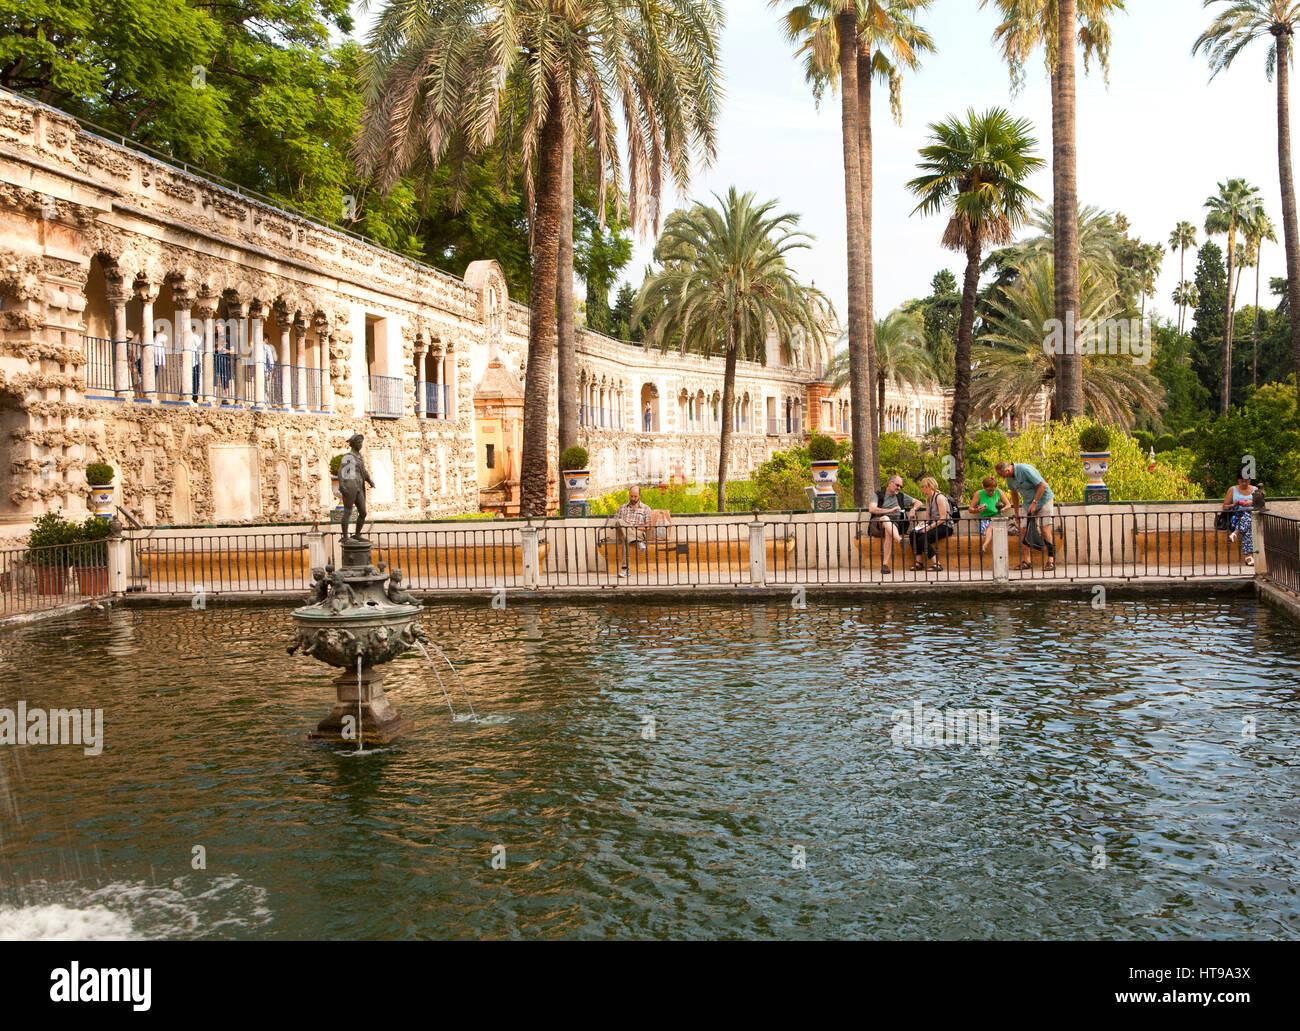 Estanque del mercurio, dans les jardins de l'Alcazar palais, Séville, Espagne Banque D'Images